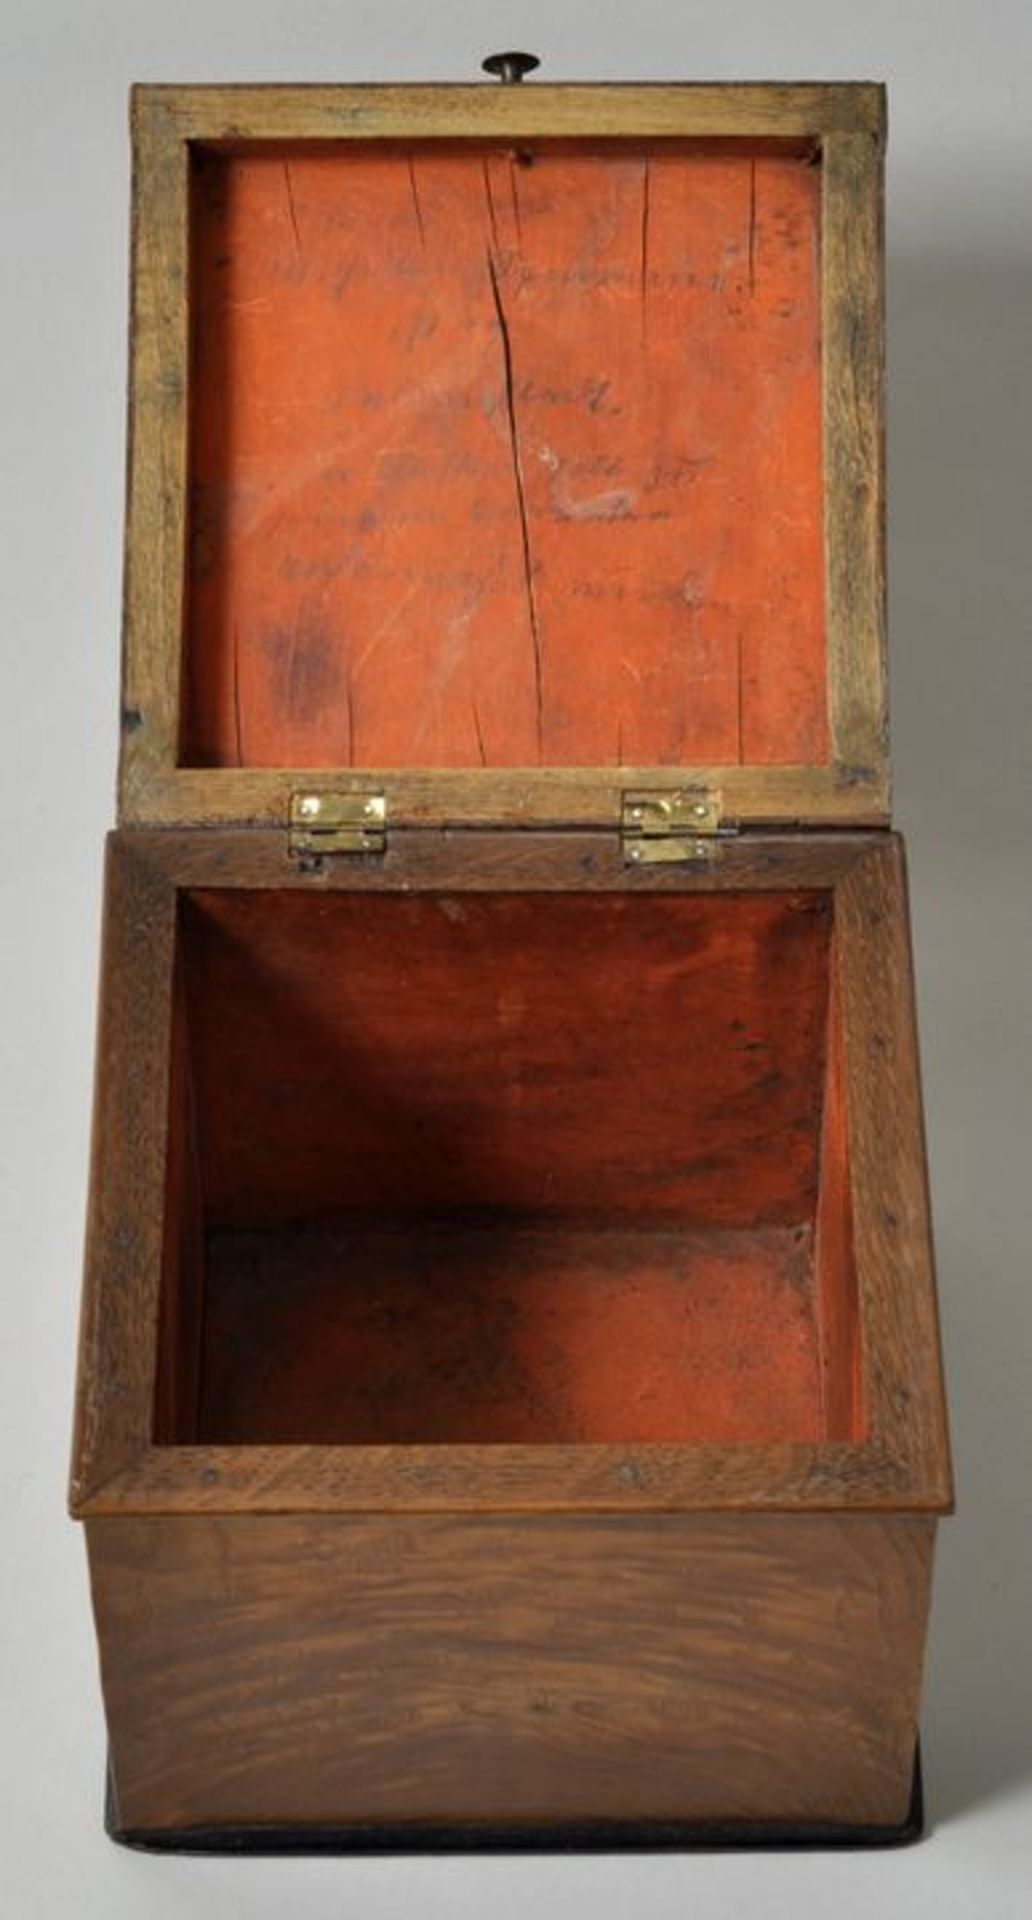 Kästchen, 1. H. 19. Jh.Eiche auf Laubholz furniert, würfelförmiger Korpus mit Scharnierdeckel, - Bild 2 aus 3